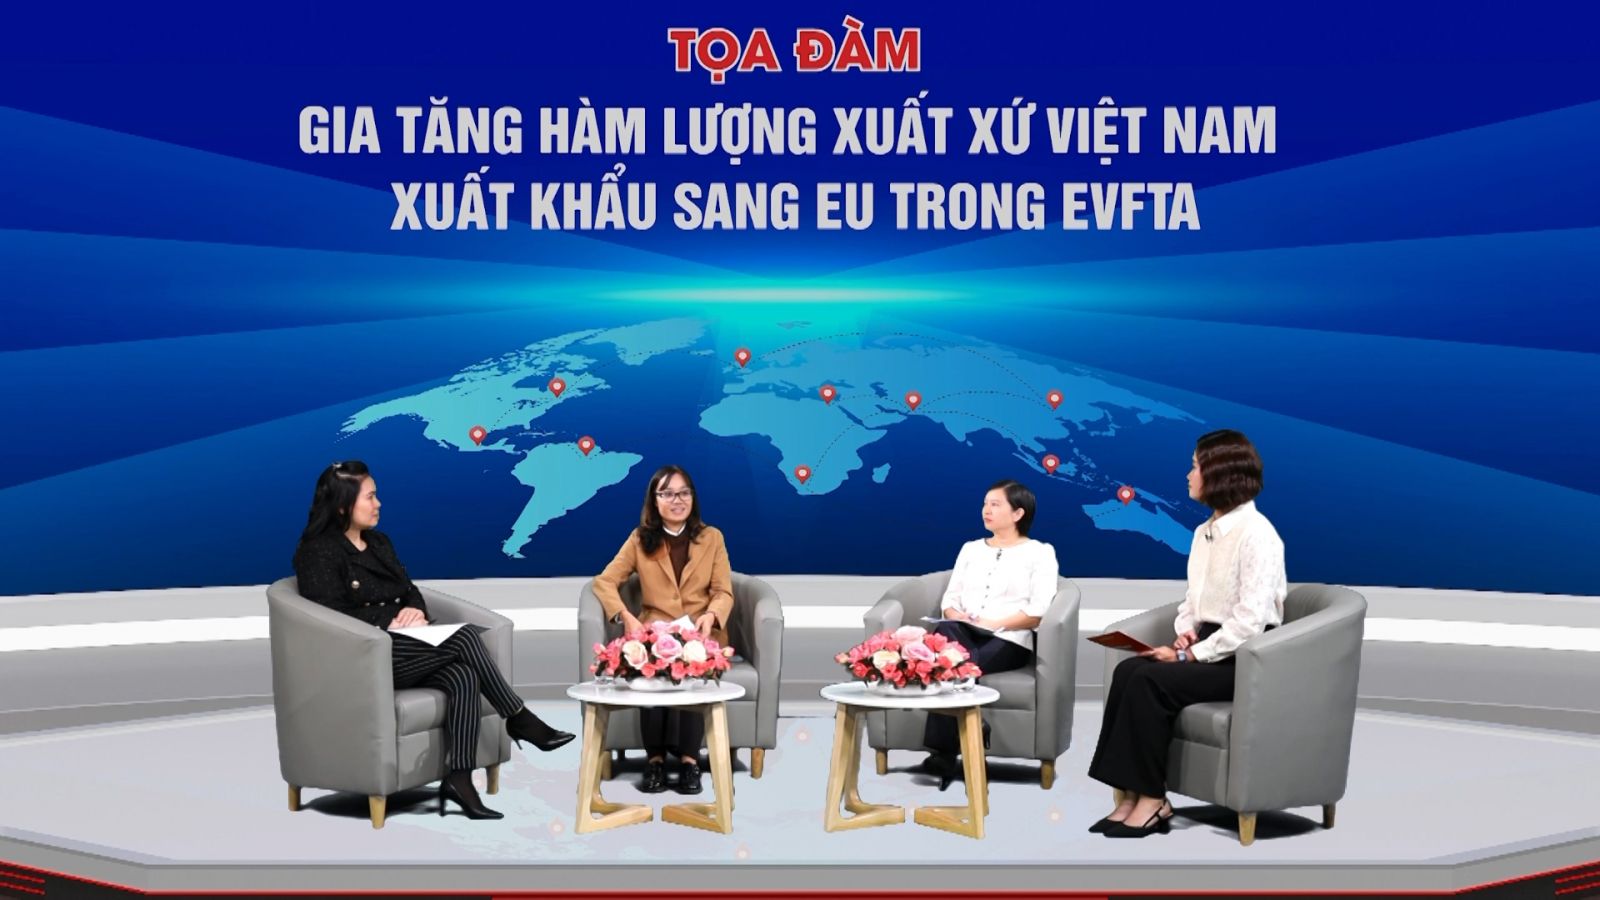 Gia tăng hàm lượng xuất xứ Việt Nam xuất khẩu sang EU trong EVFTA